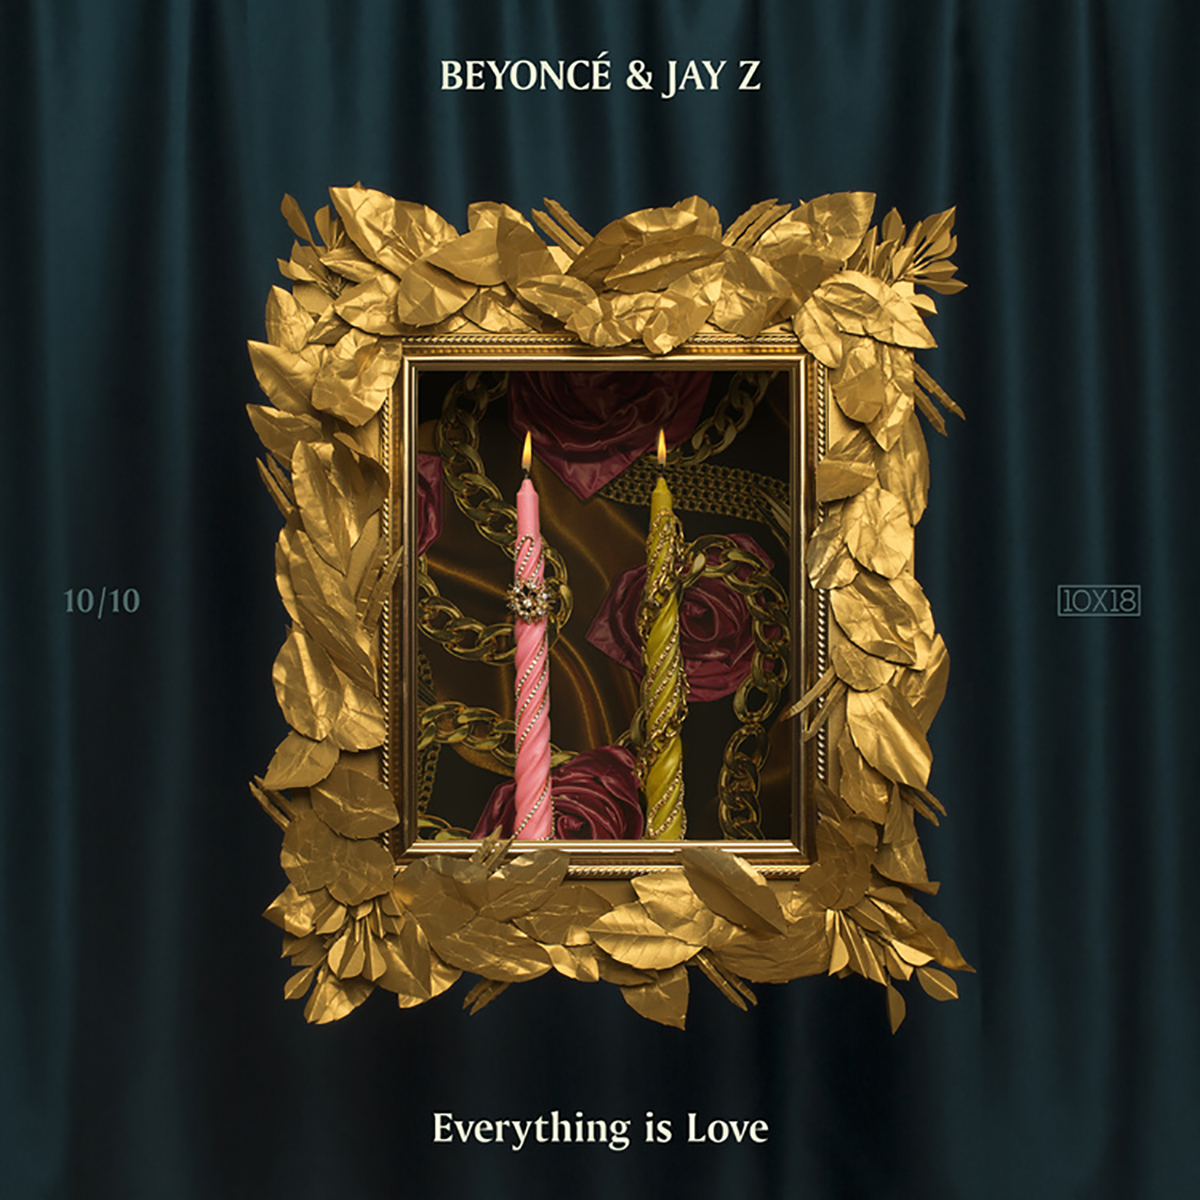 碧昂斯和Jay Z的专辑封面